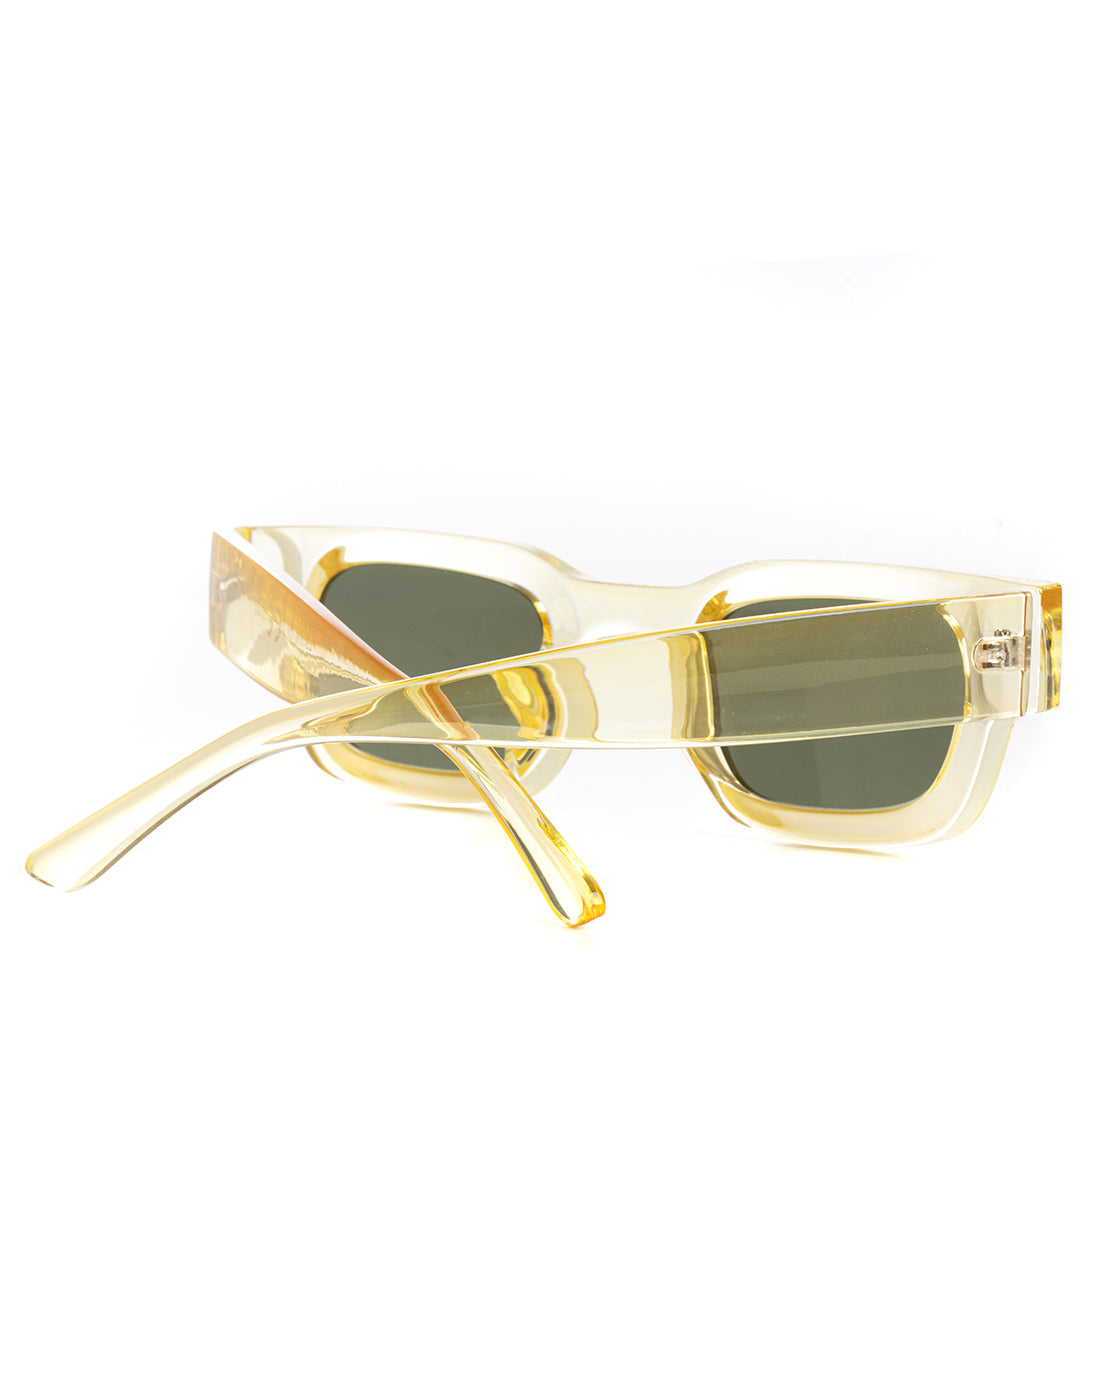 Occhiali da Sole Uomo Unisex Sunglasses Giallo Trasparenti Casual GIOSAL-OC1057A